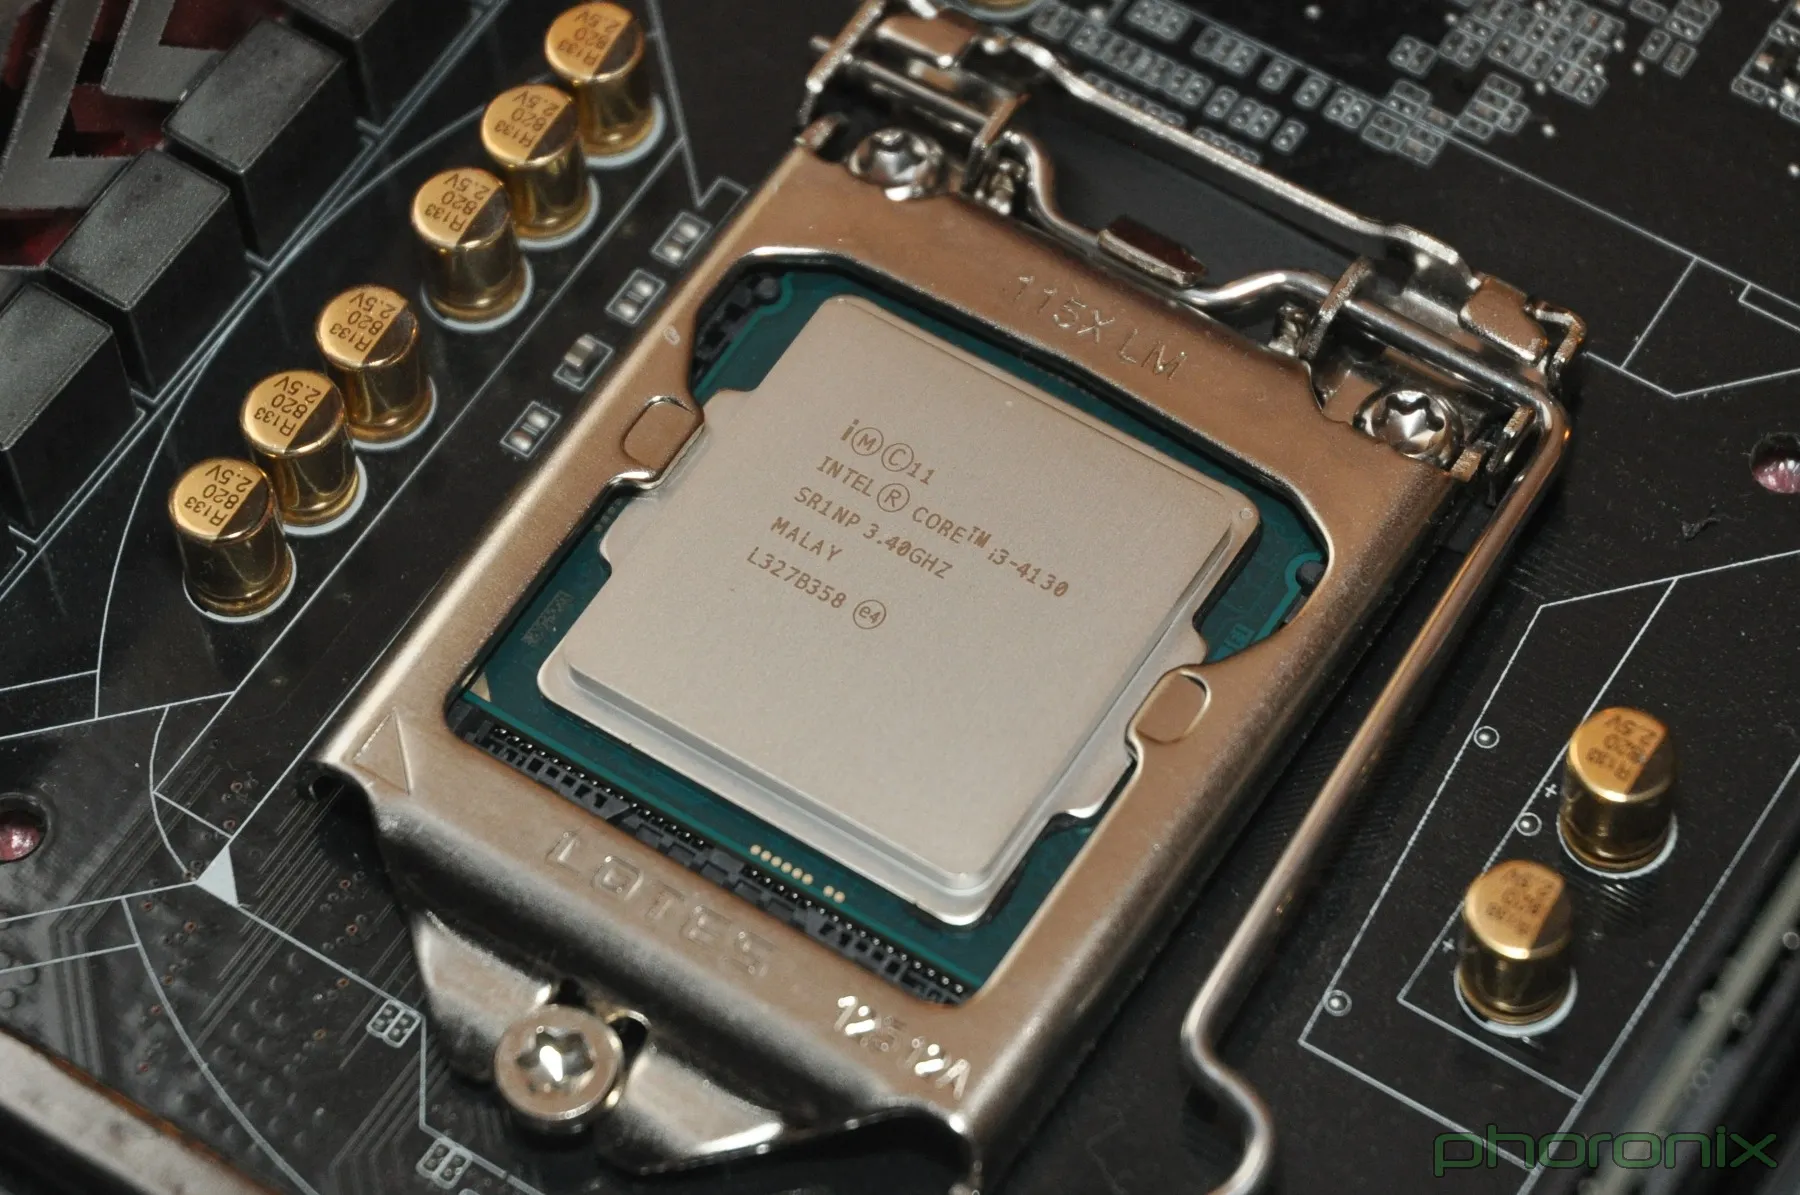 Core i5 4400. Intel Core i3-4130 Haswell lga1150, 2 x 3400 МГЦ. Процессор сокет 1150 i3 4130.